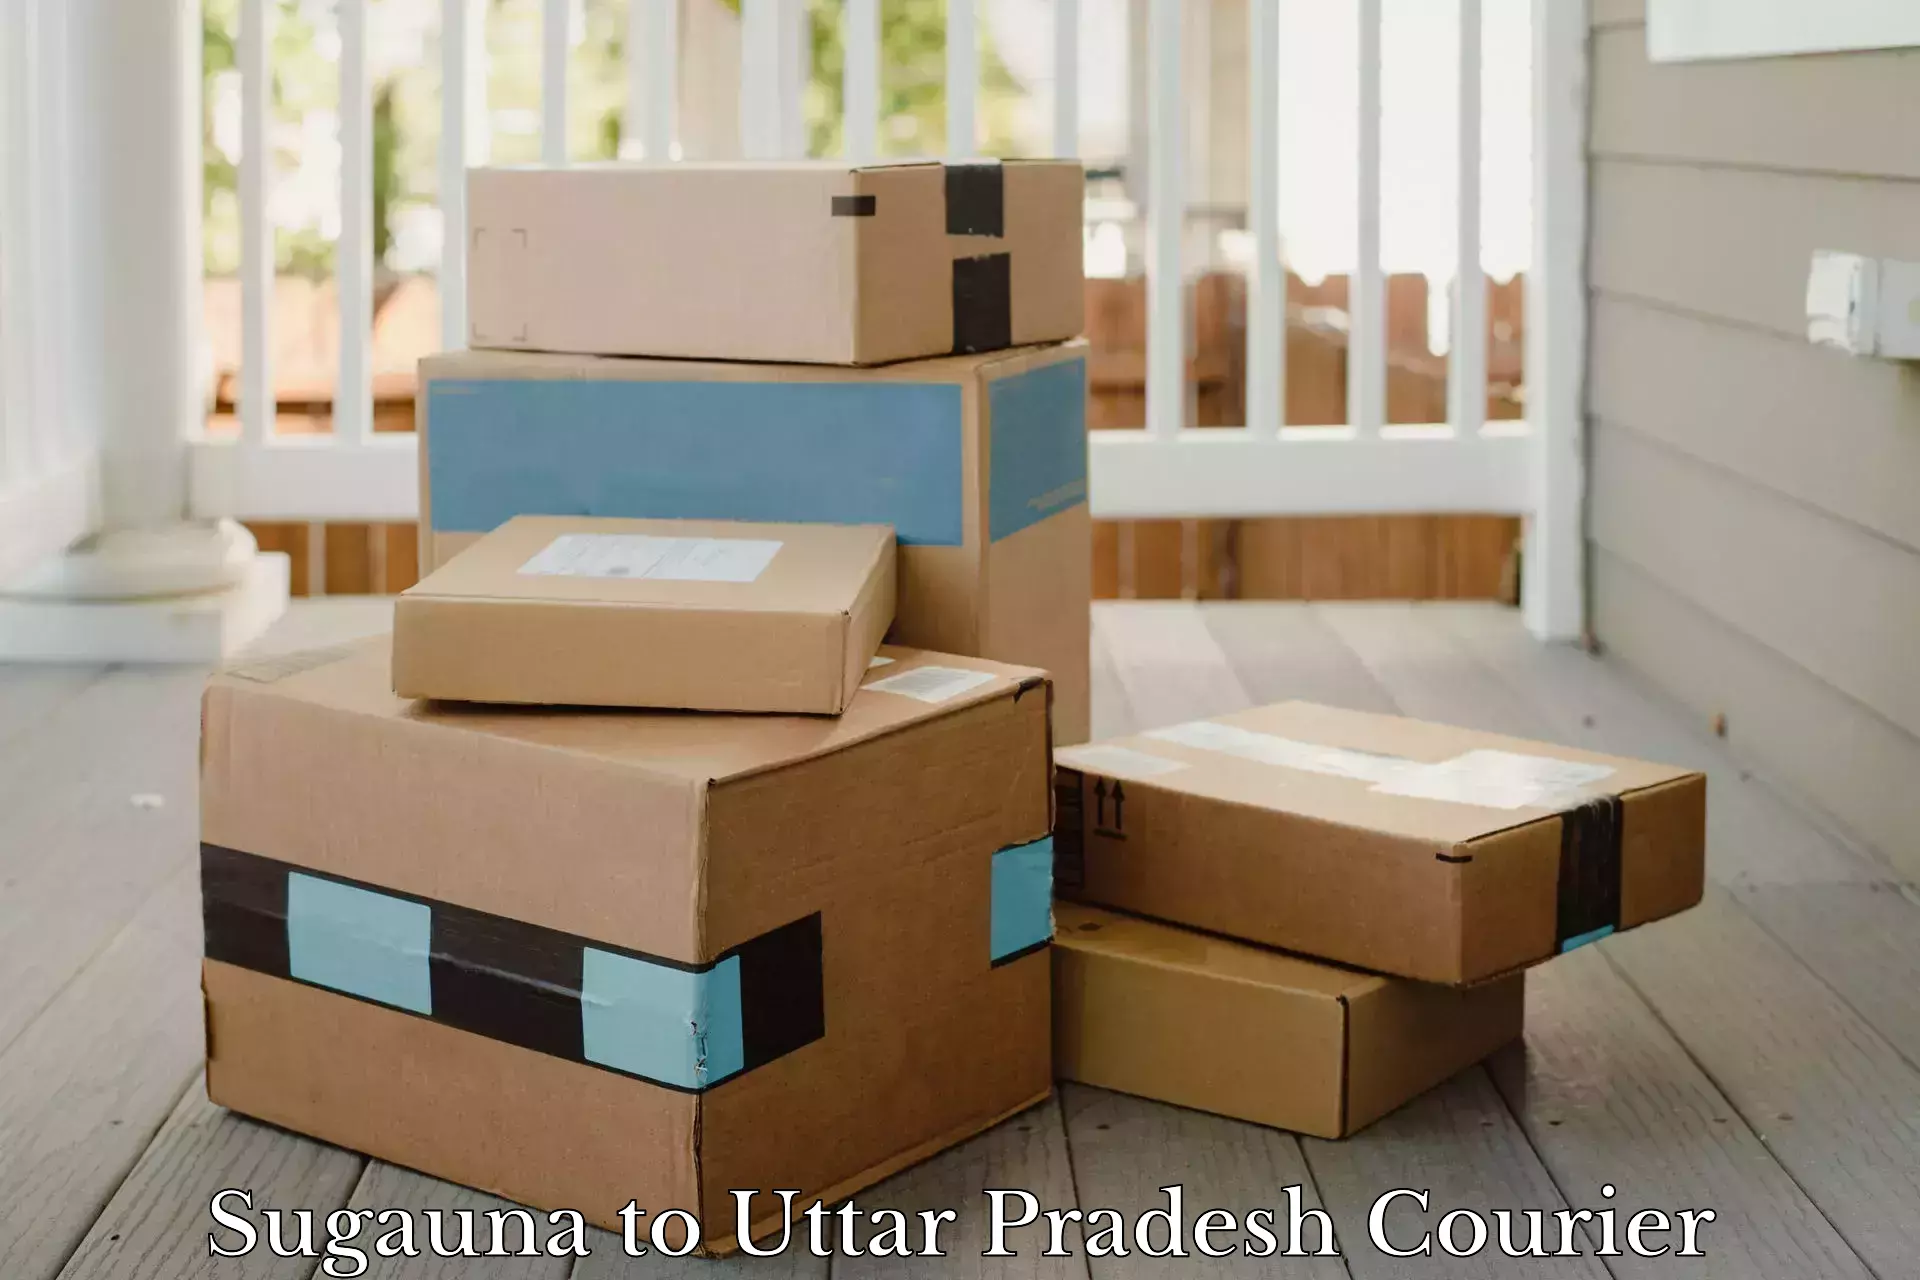 Flexible delivery schedules Sugauna to Uttar Pradesh